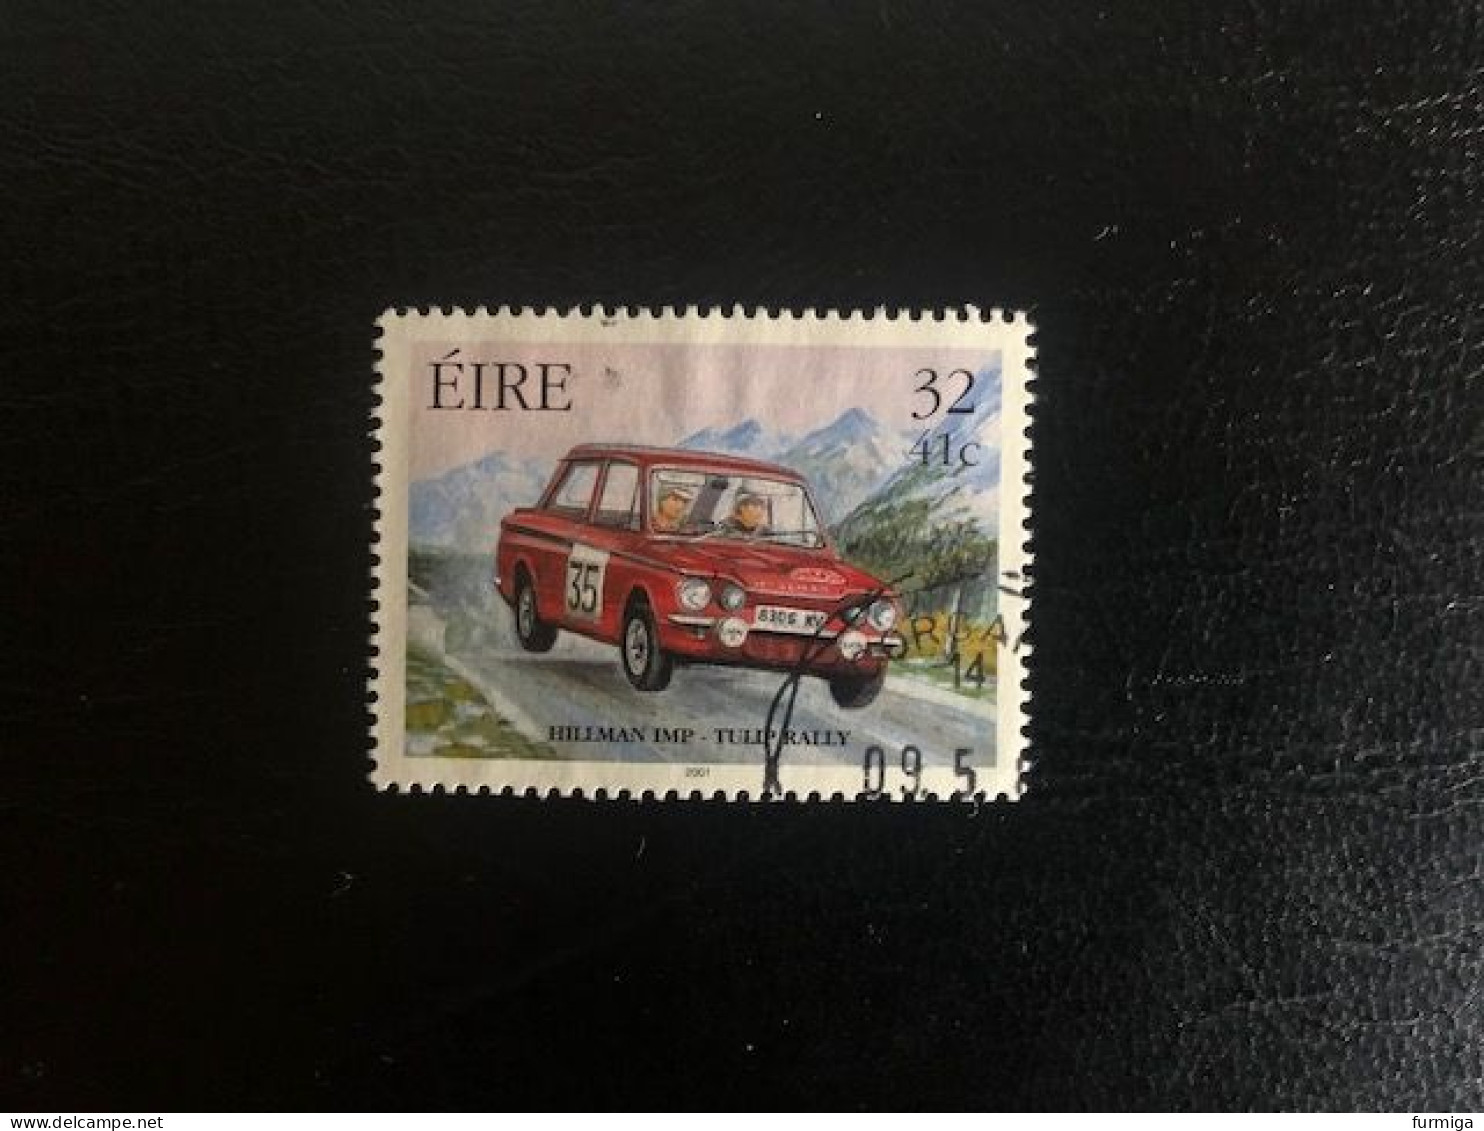 Irland EIRE 2001 - 1324 - Fein RUND Gestempelt - Fine Used LUX Postmark - Gebruikt